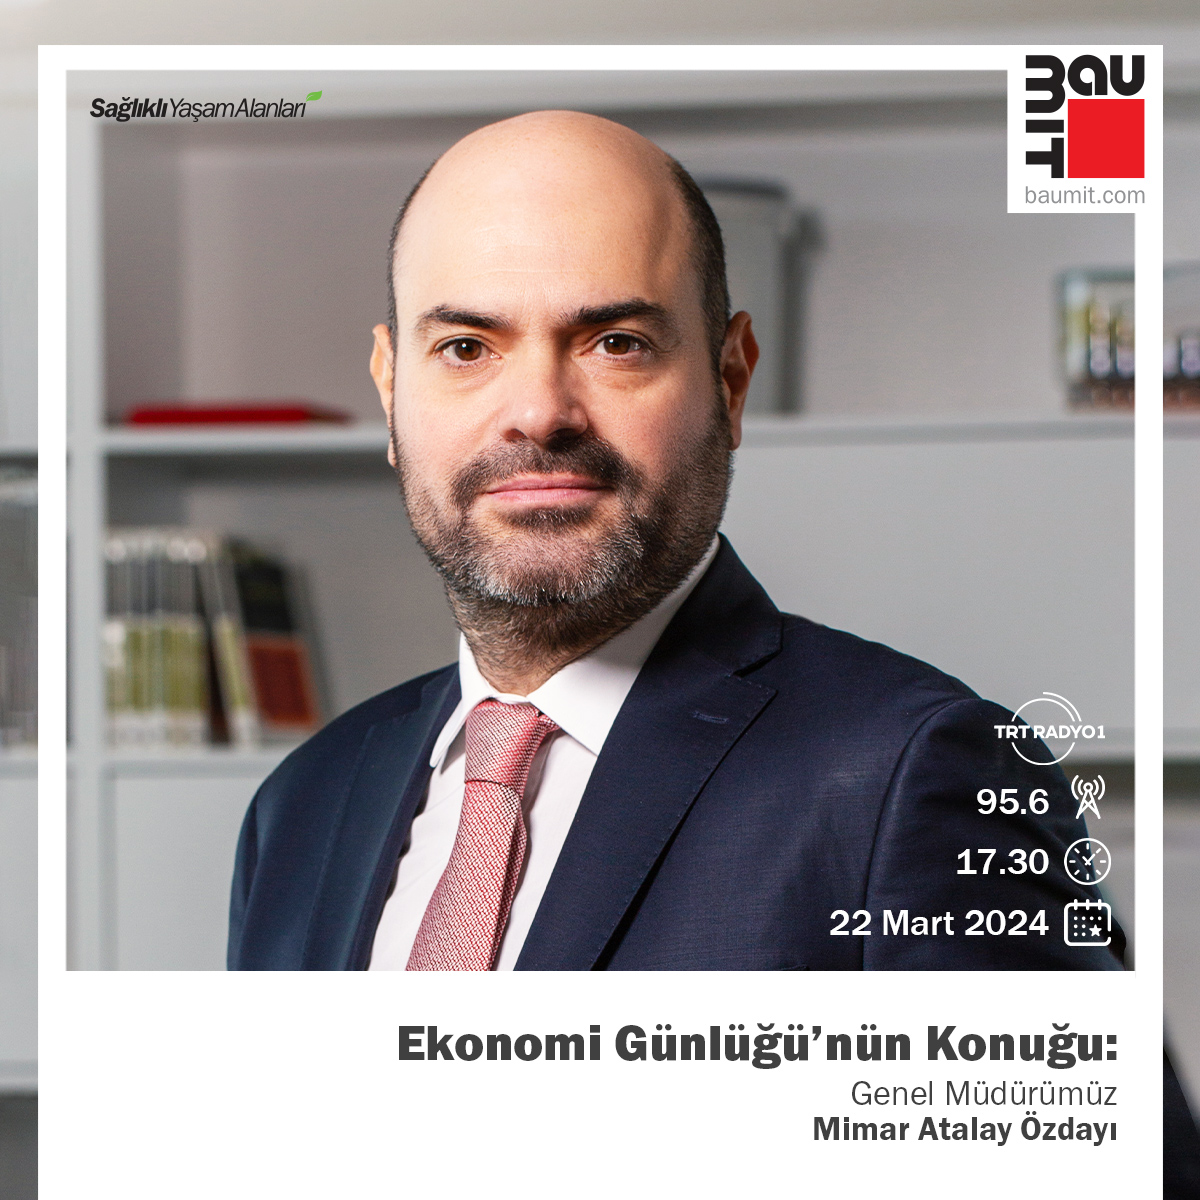 Baumit Türkiye Genel Müdürü Atalay Özdayı, TRT 1 Radyo'da Ekonomi Günlüğü programına konuk olacak. Programı 95.6 radyo frekansı ile takip edebilirsiniz.